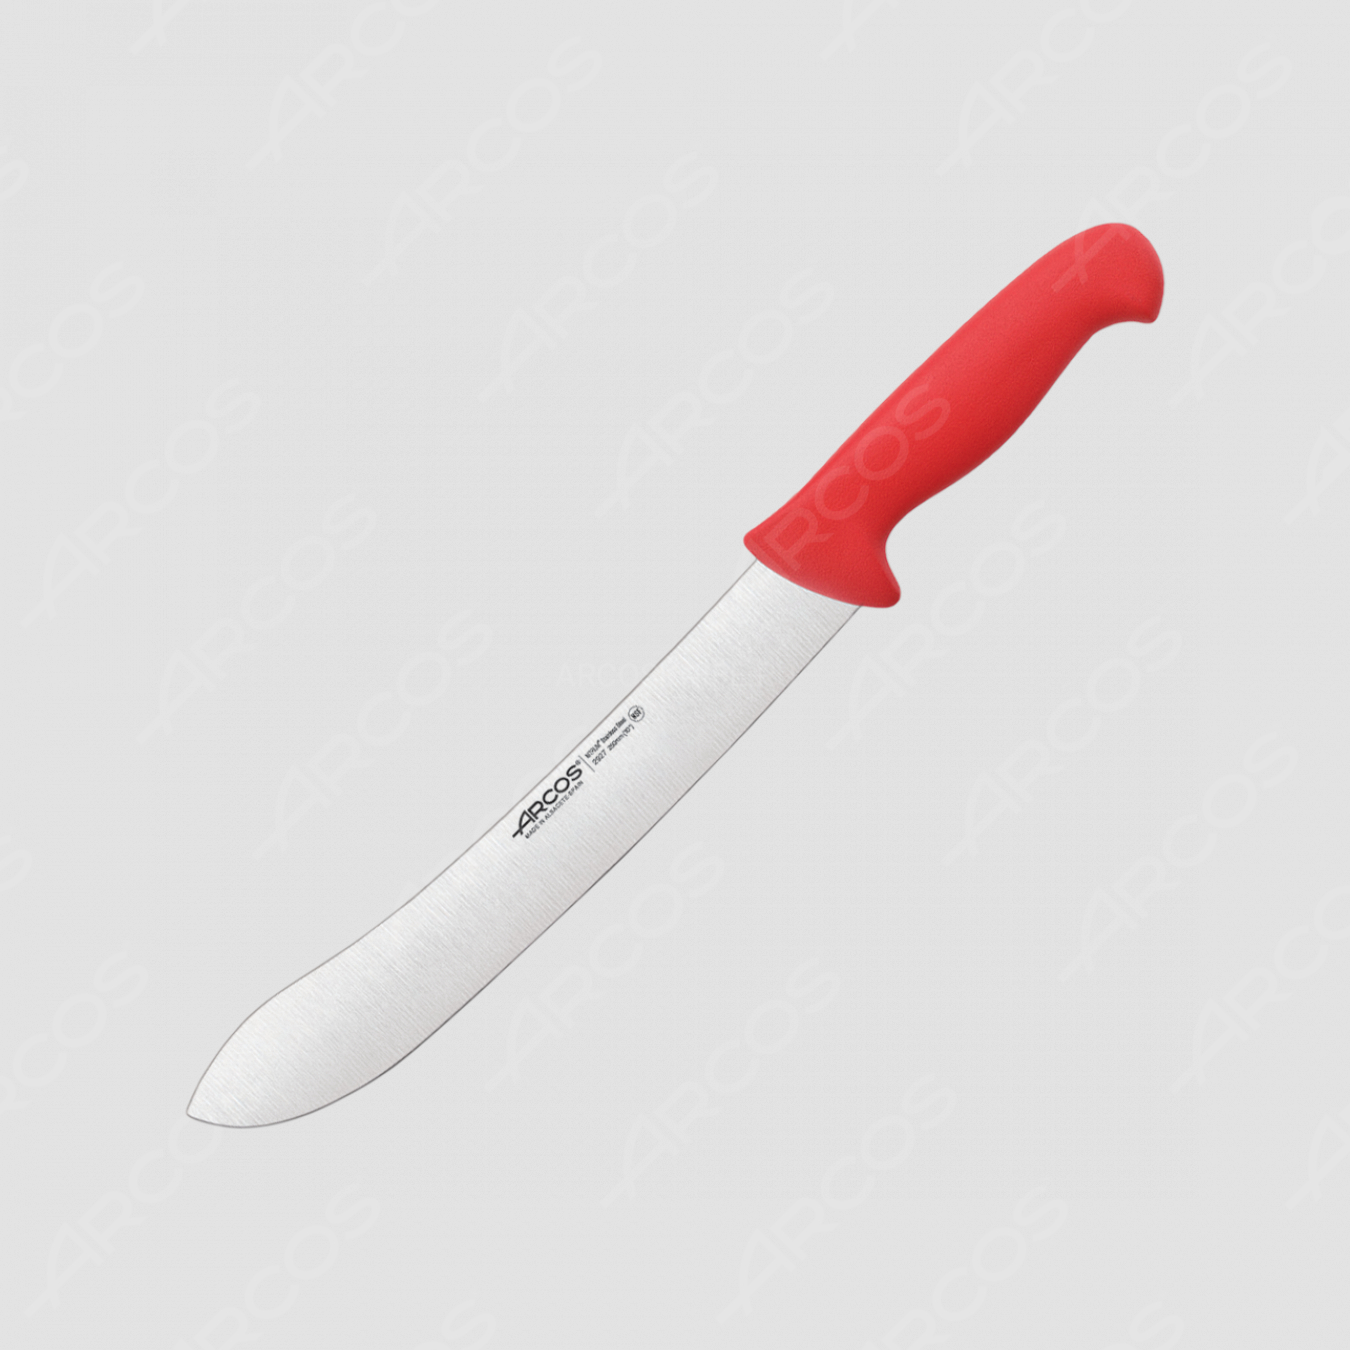 Нож кухонный для разделки 25 см, рукоять - красная, серия 2900, ARCOS, Испания